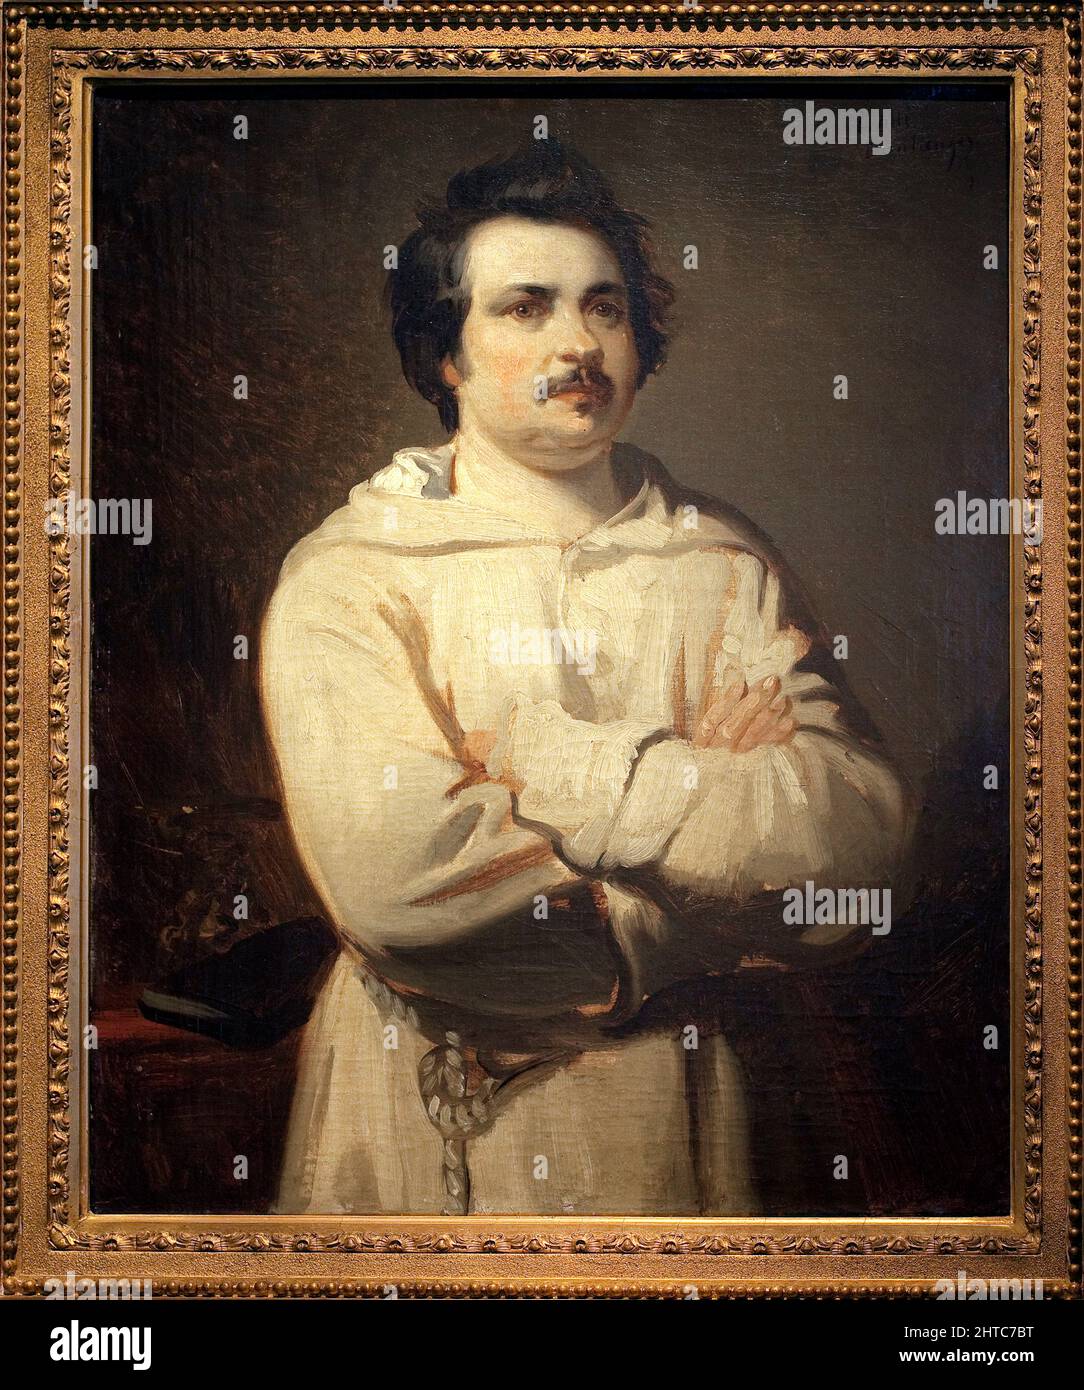 Portrait de Balzac (Honoré de Balzac, 1799-1850). Peinture de Louis Boulanger (1806-1867), aile sur toile, vers 1836, art francais, romantisme. Musée des Beaux-Arts de Tours. Banque D'Images